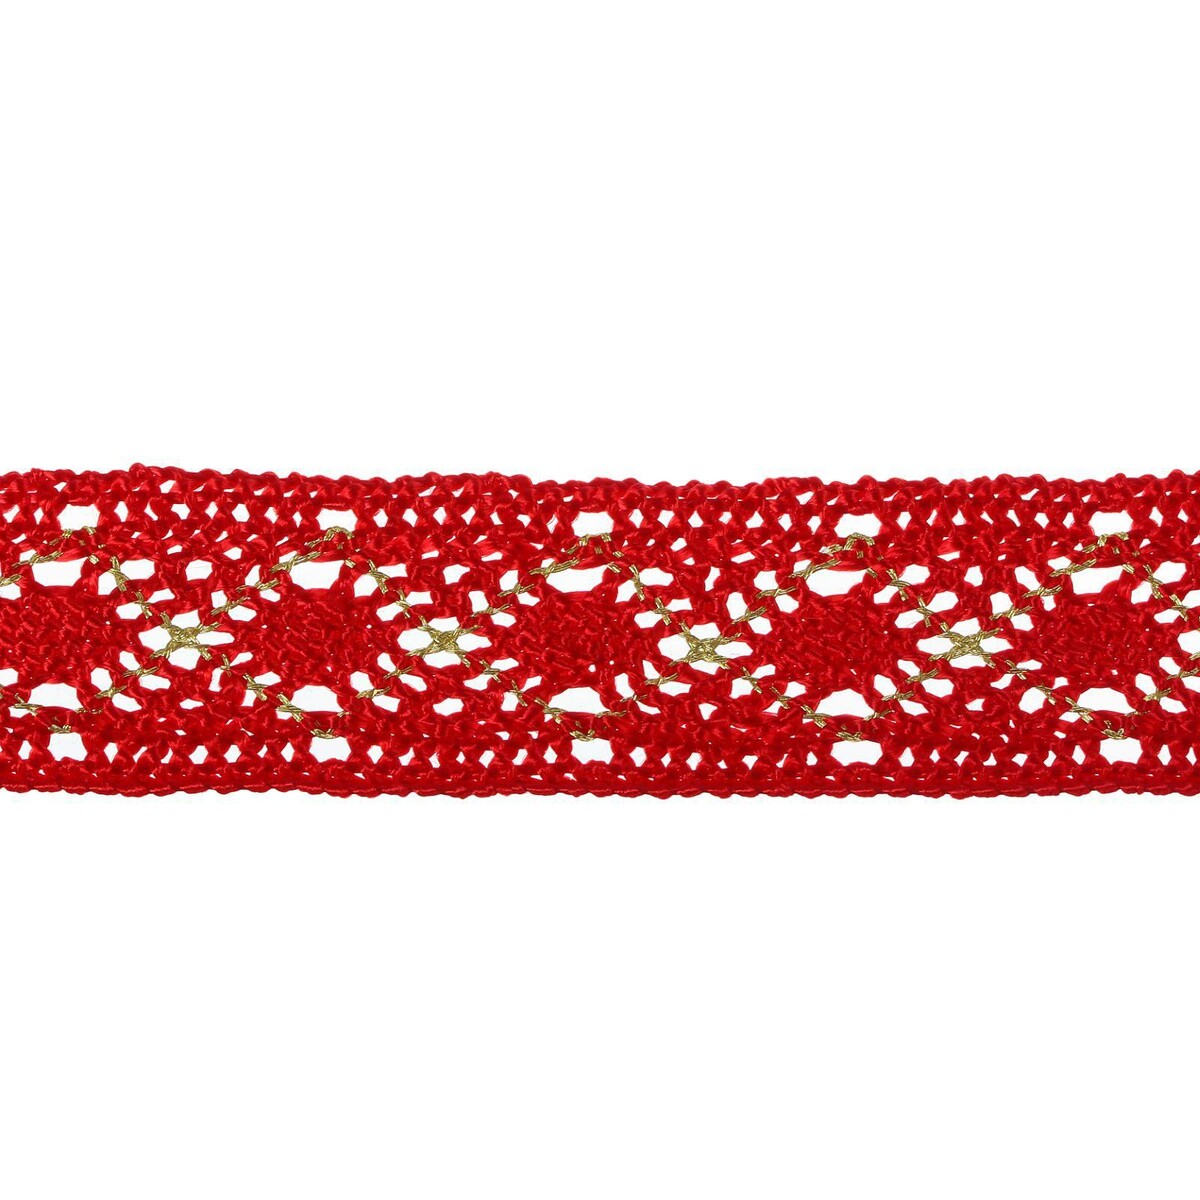 Тесьма красная с люрексом, 2,5 см, в рулоне 10 метров калька чертёжная под карандаш ширина 625 мм в рулоне 10 метров 40 г м² в пп плёнке